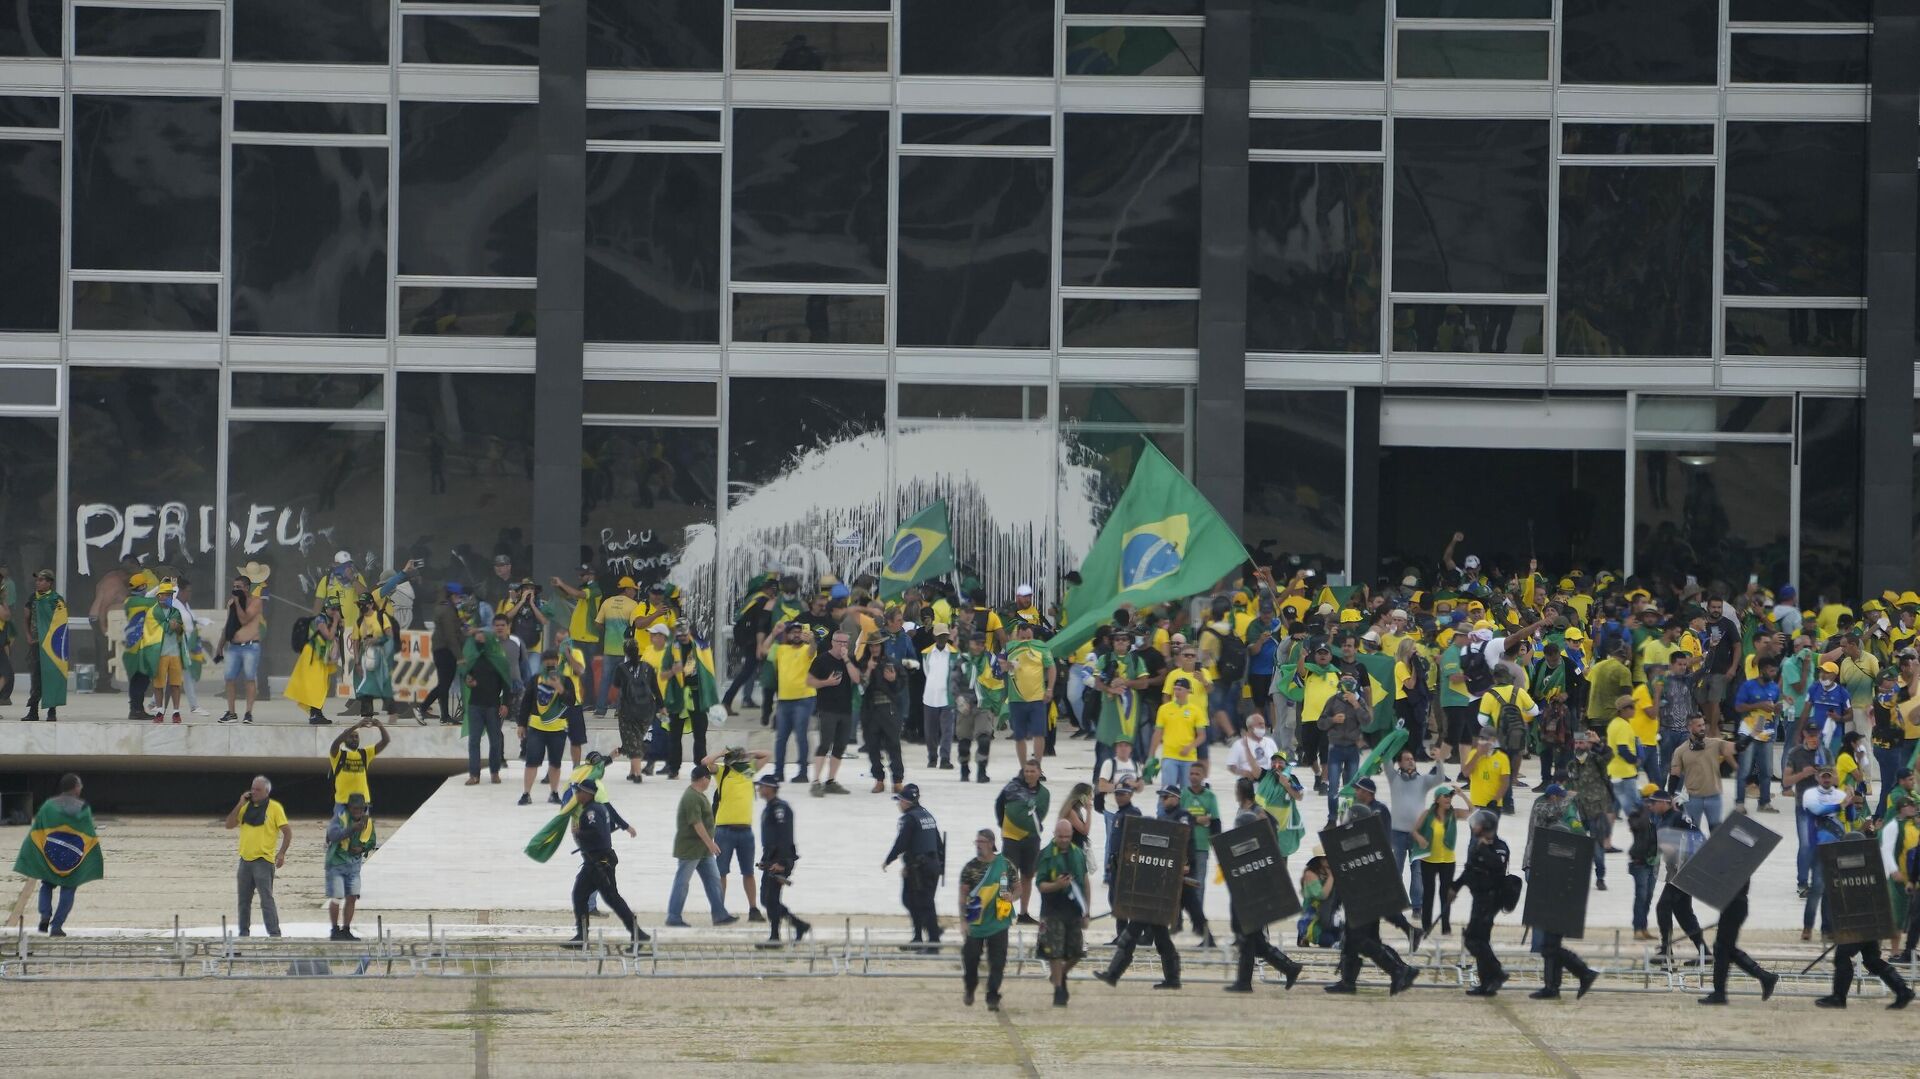 В Бразилии протестующие против президента устроили беспорядки. Что известно